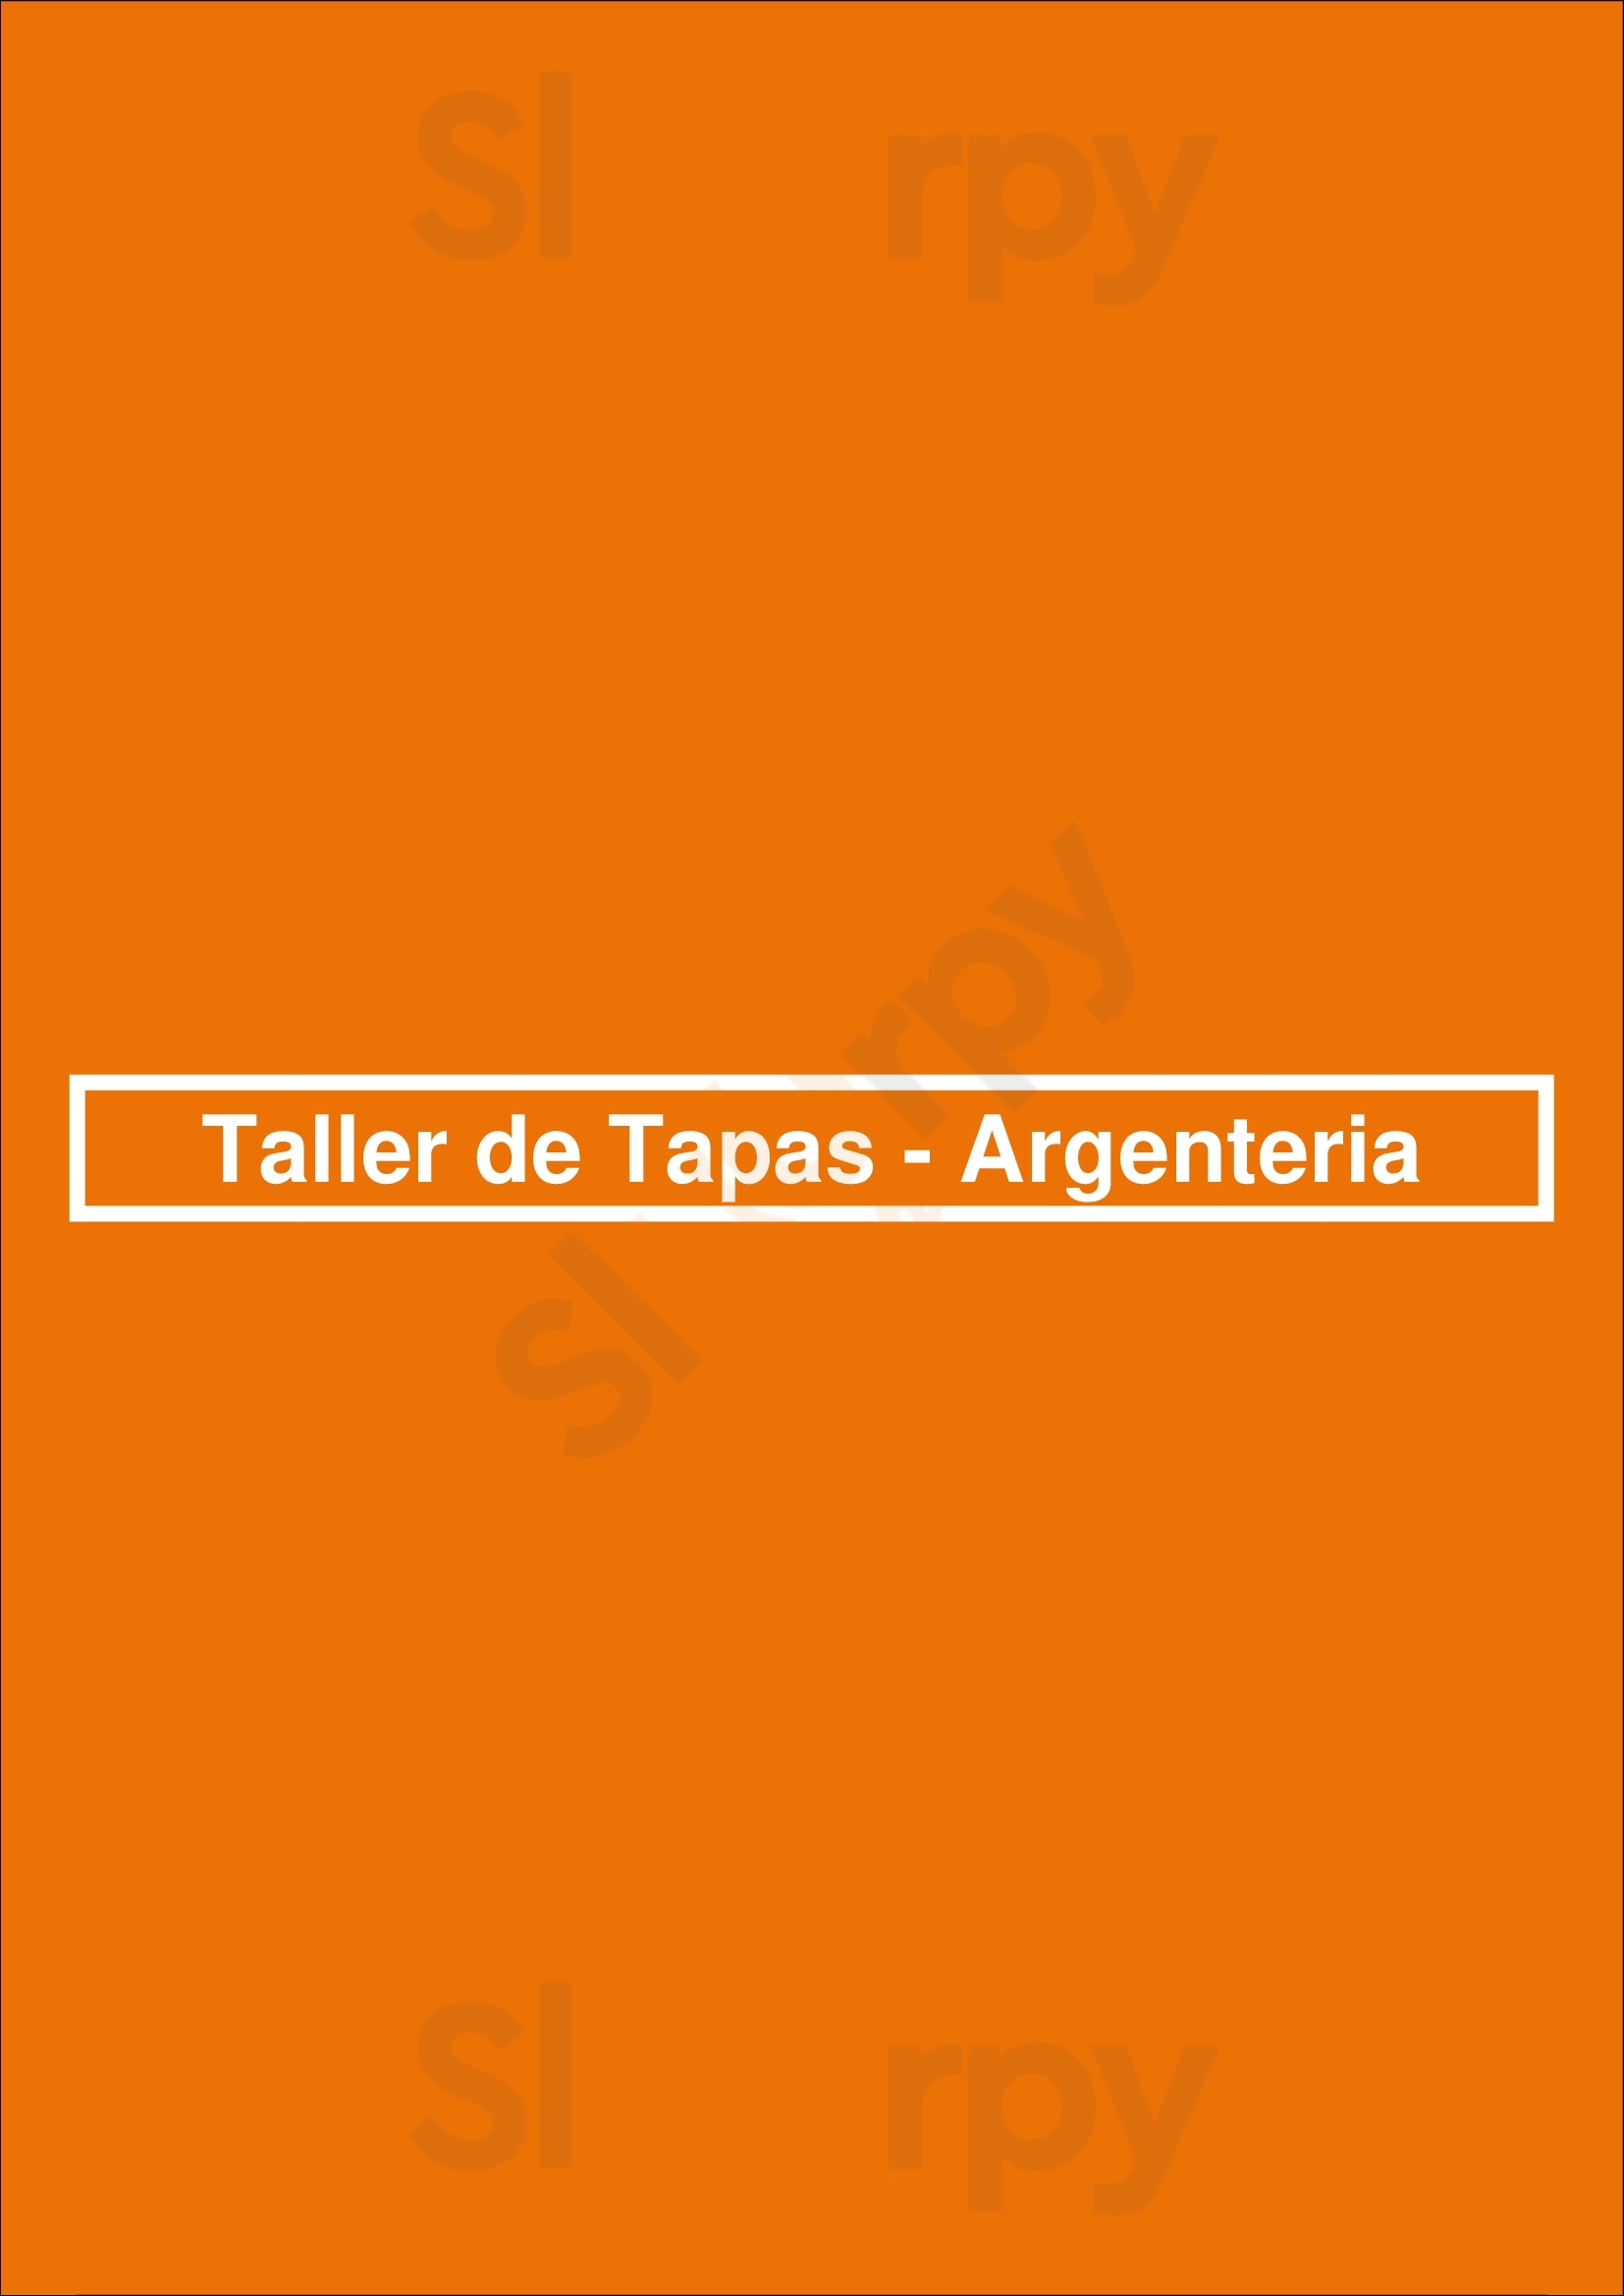 Taller De Tapas - Argenteria Barcelona Menu - 1